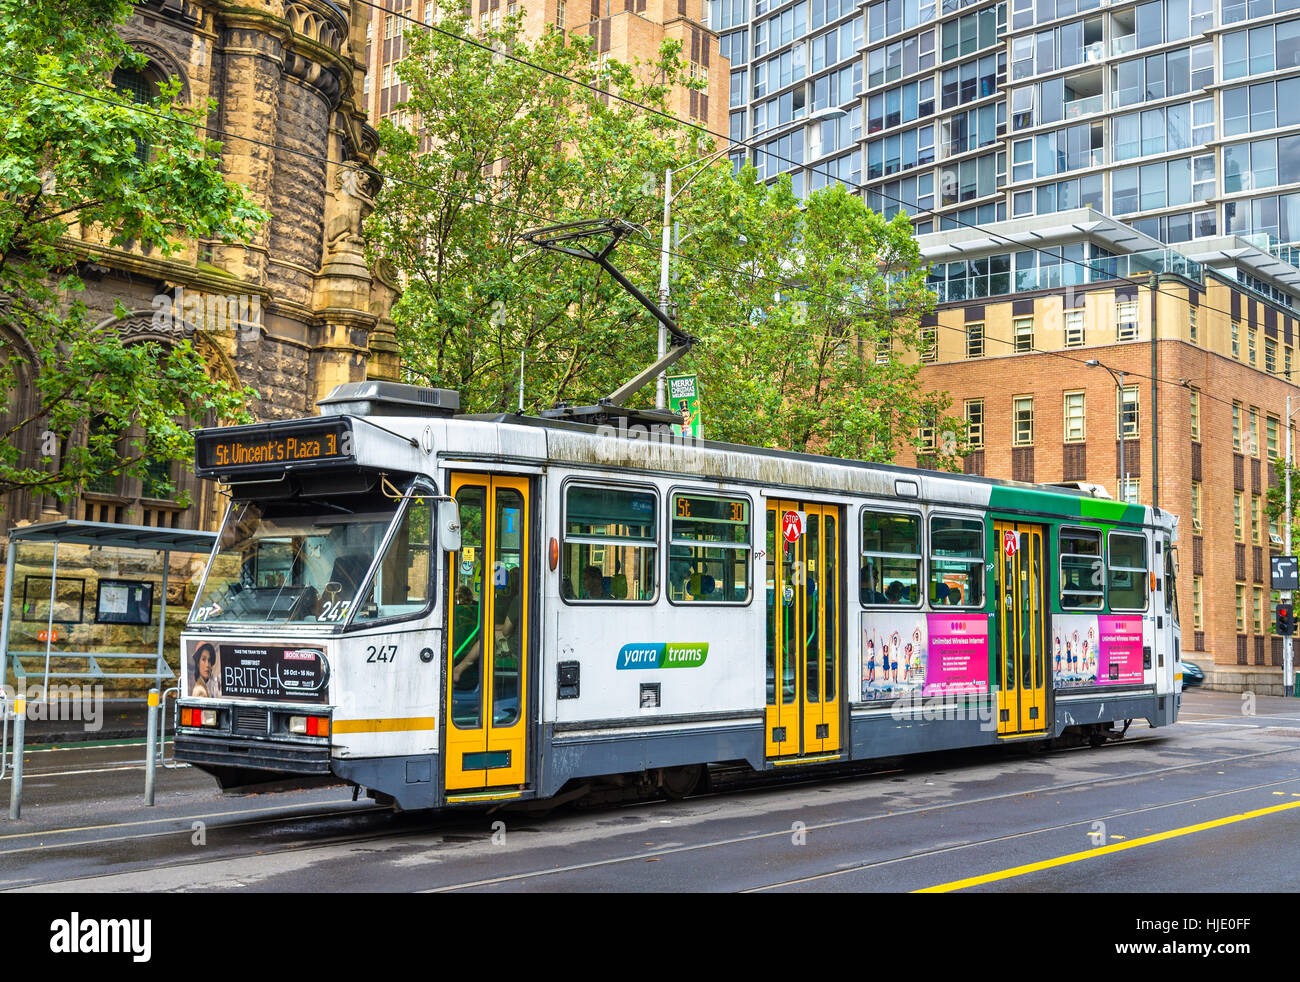 Melbourne, Australie - 28 décembre 2016 : Un Comeng1 classe tramway sur La Trobe Street. Système de tramway de Melbourne est le plus grand réseau de tramway urbain à la w Banque D'Images